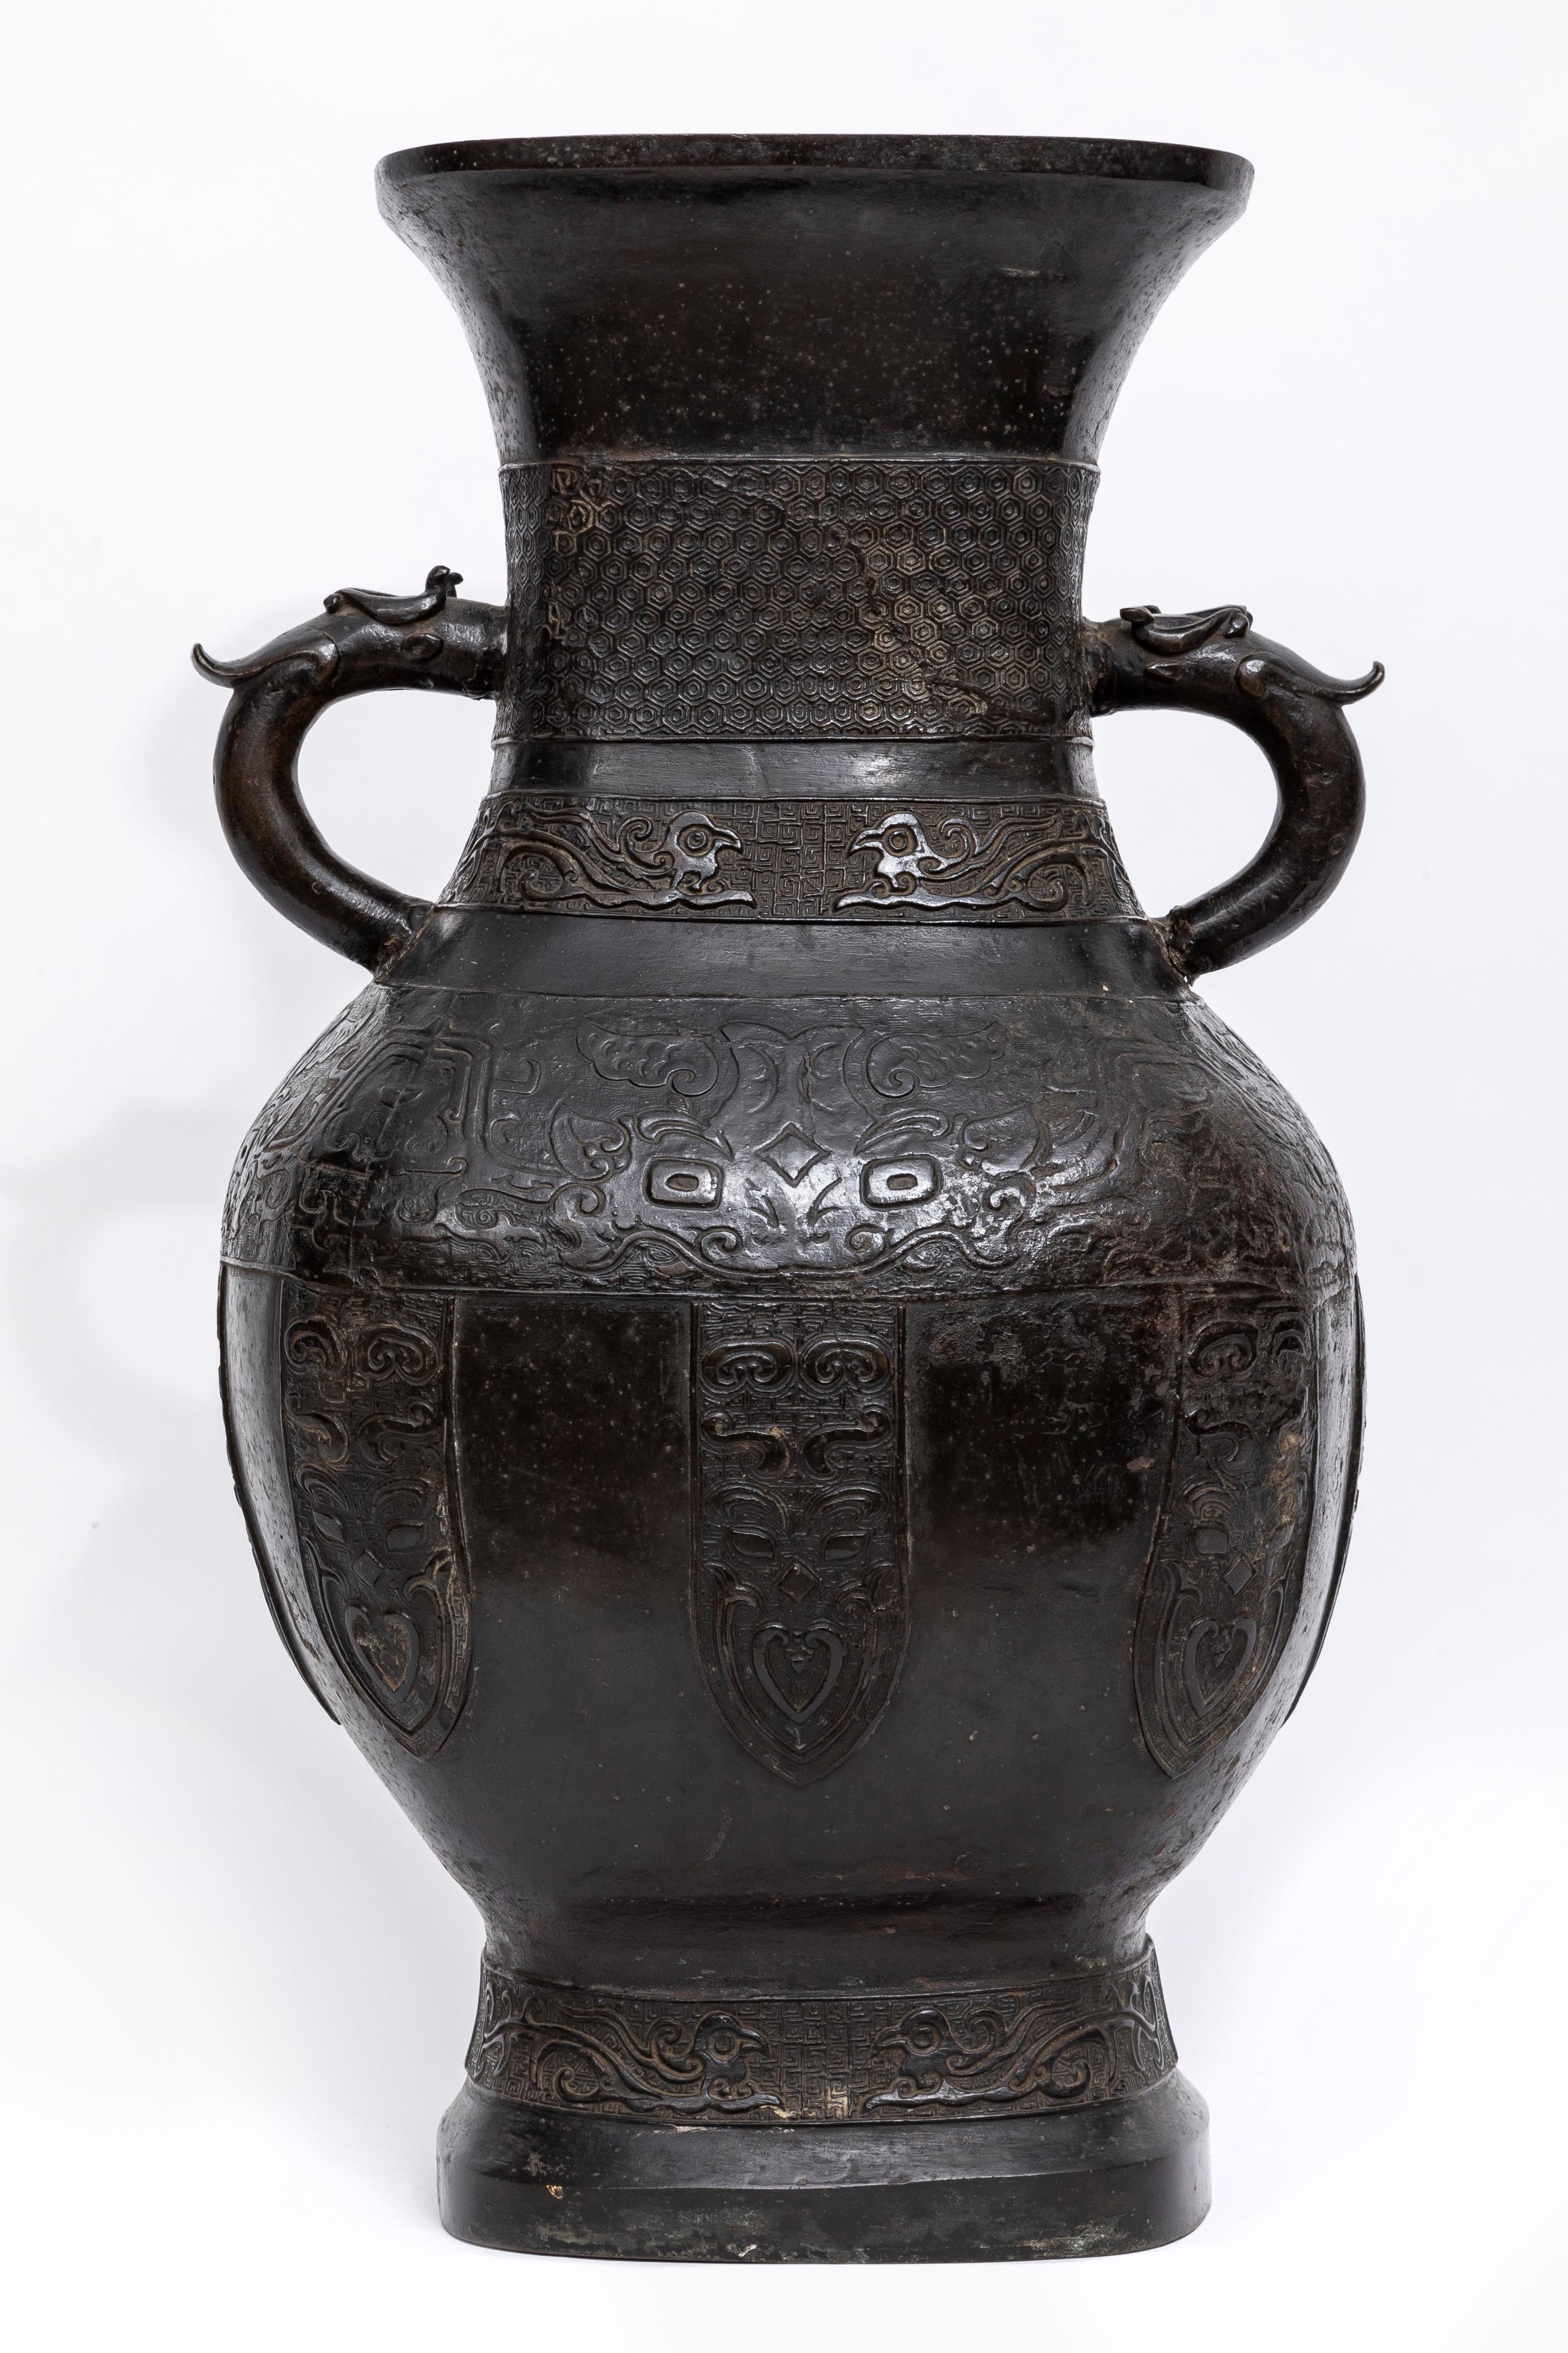 Diese monumentale Bronzevase aus der Ming-Periode (16./17. Jh.) ist ein schönes Beispiel für das verheißungsvolle Dekor und die für chinesisches Mobiliar typischen Markierungen. Die Vase ist mit Taotie-Masken gegossen, das Becken ist mit religiöser